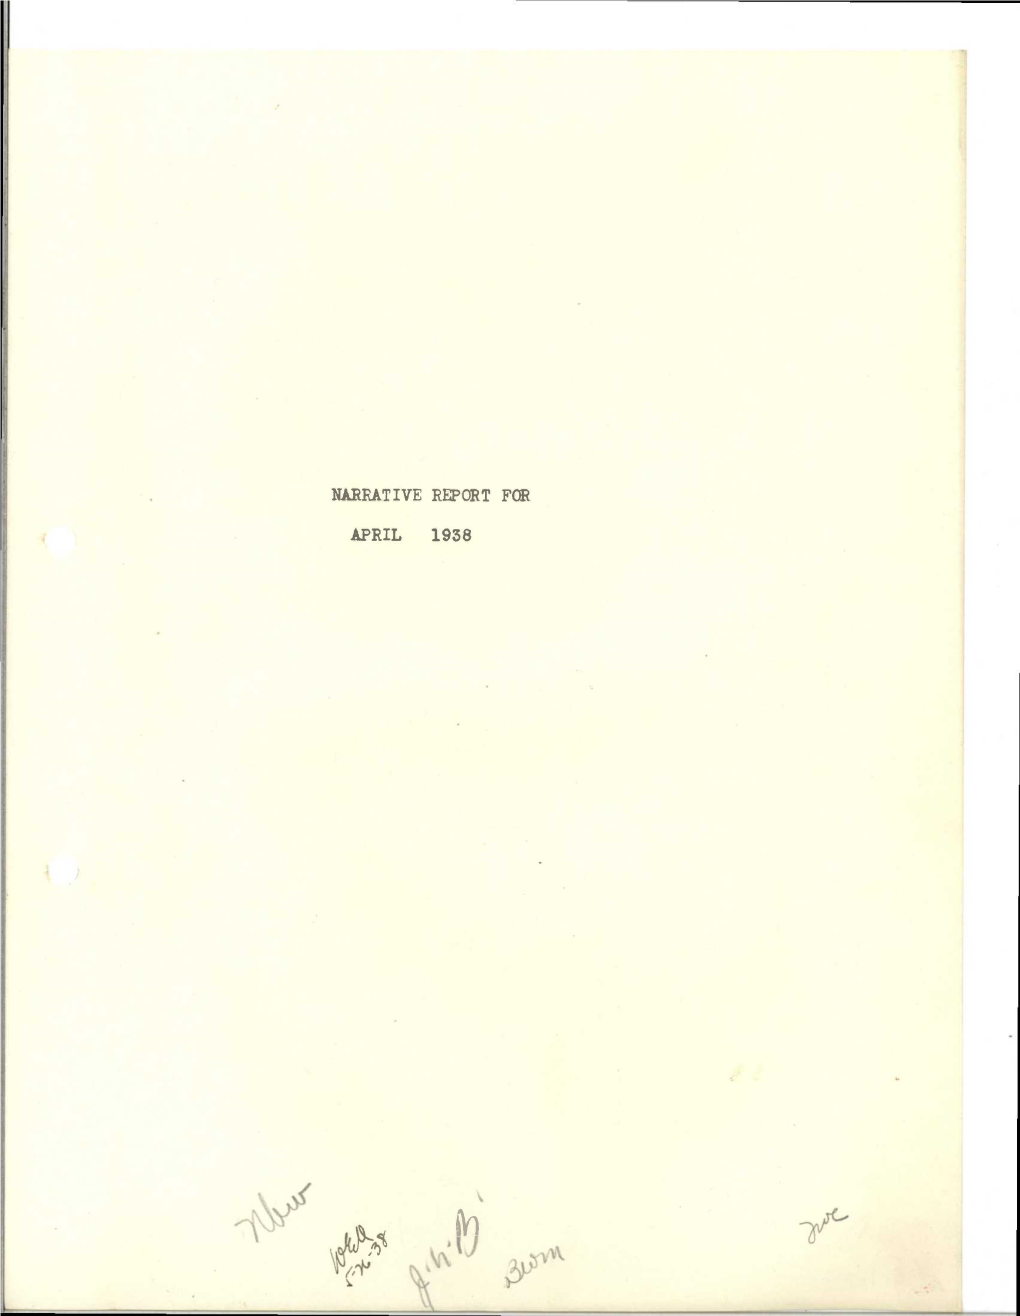 Narrative Report for April 1938